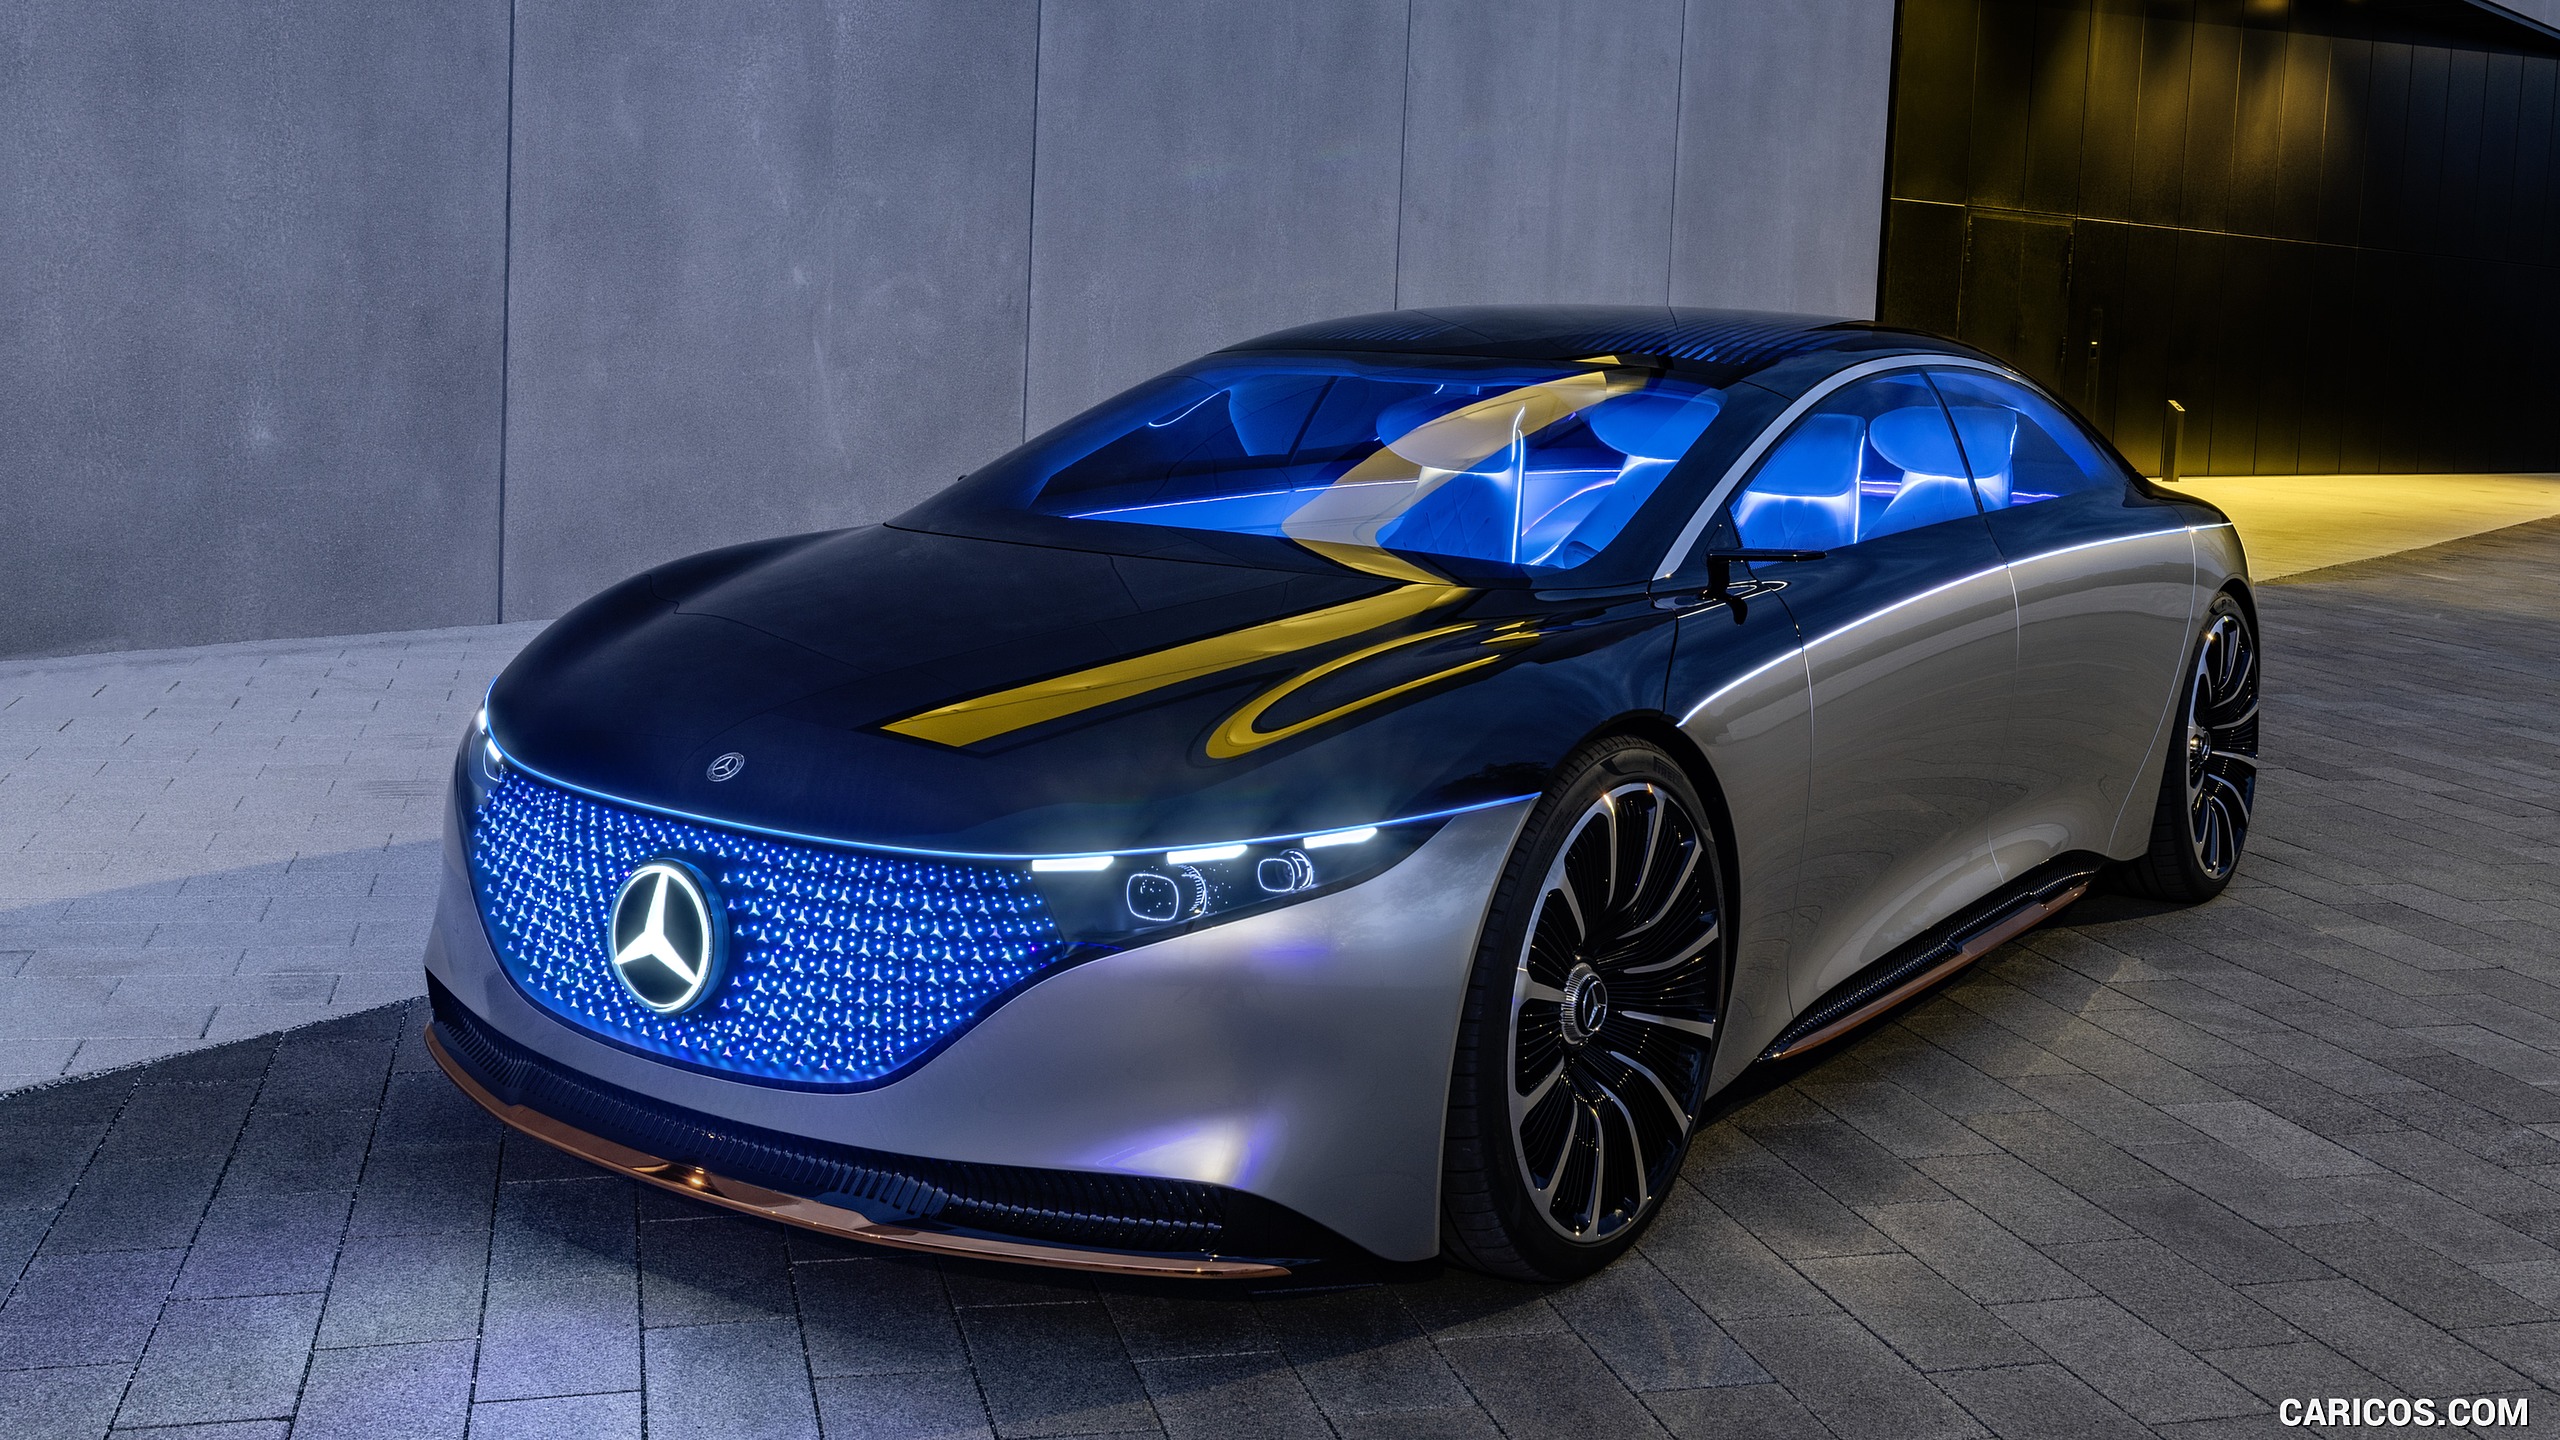 2019 Mercedes-Benz Vision EQS Concept - Front Three-Quarter, #26 of 58